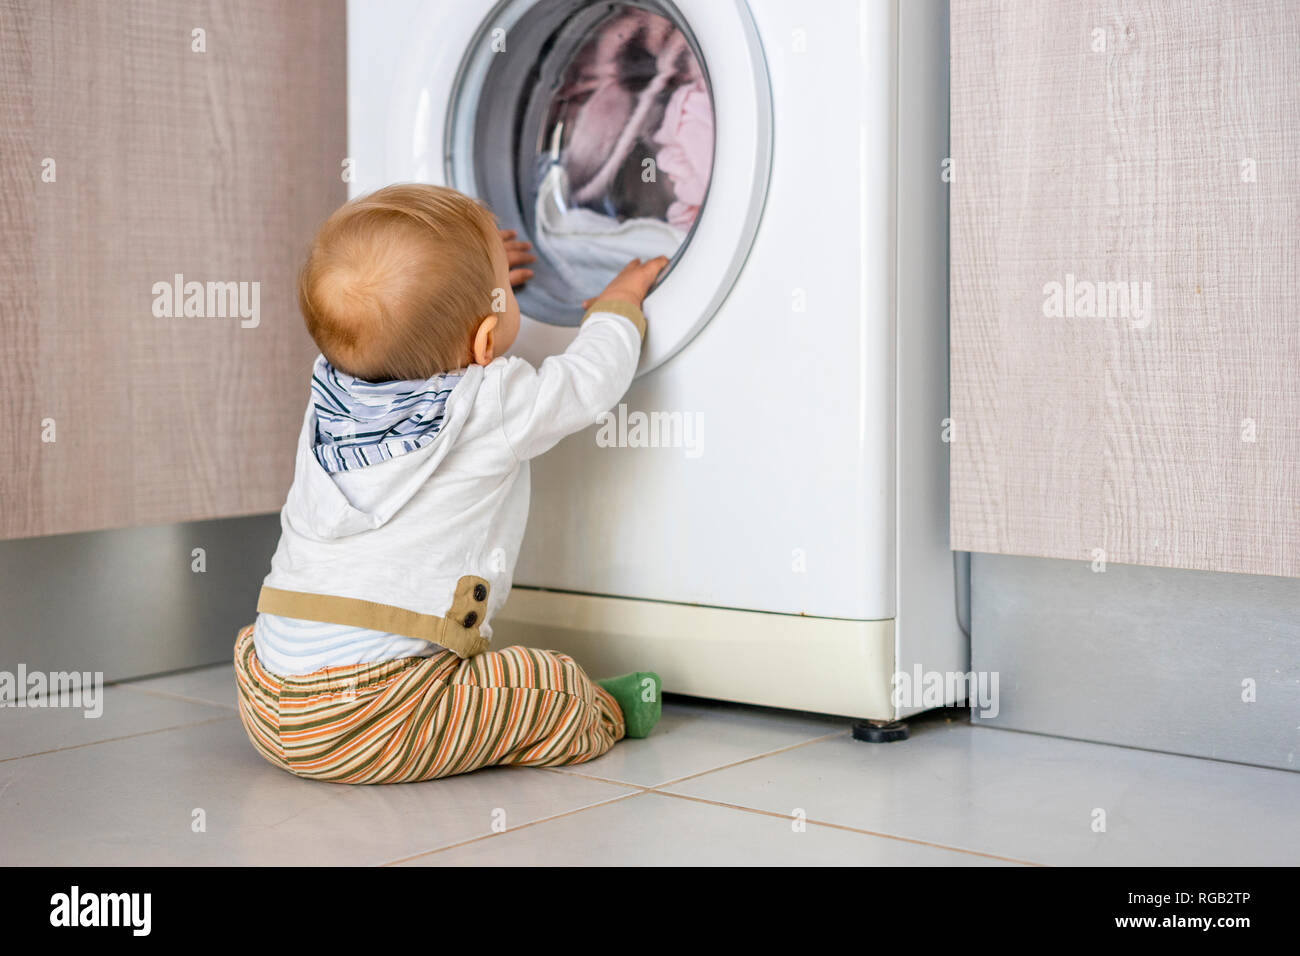 Baby Boy interesados en los ciclos de la lavadora lavando ropa Foto de stock